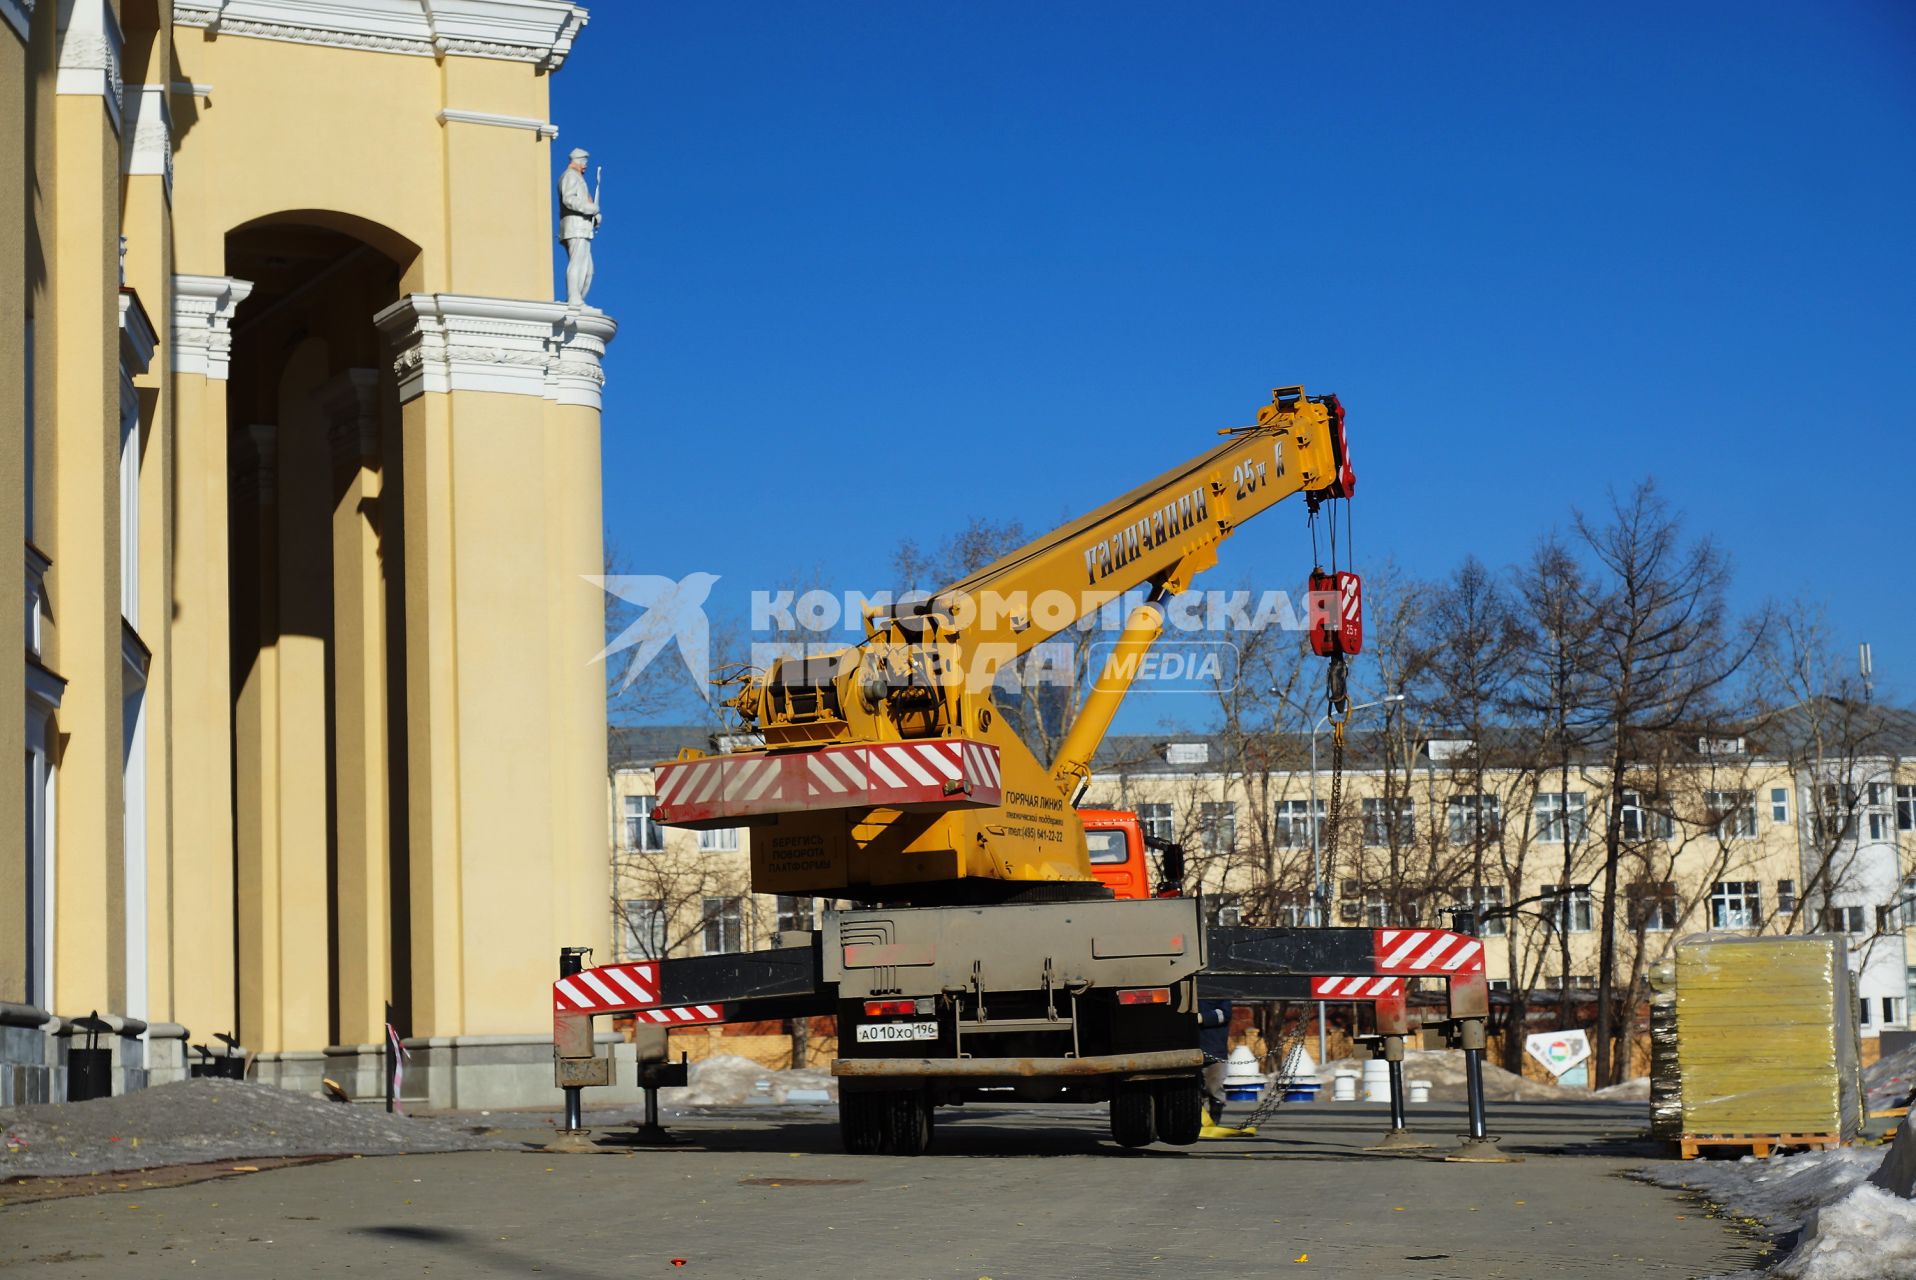 Рабочие наблюдают за погрузкой строительных материалов. Реконструкция Центрального стадиона в Екатеринбурге, где в 2018 году пройдут матчи Чемпионата мира по футболу